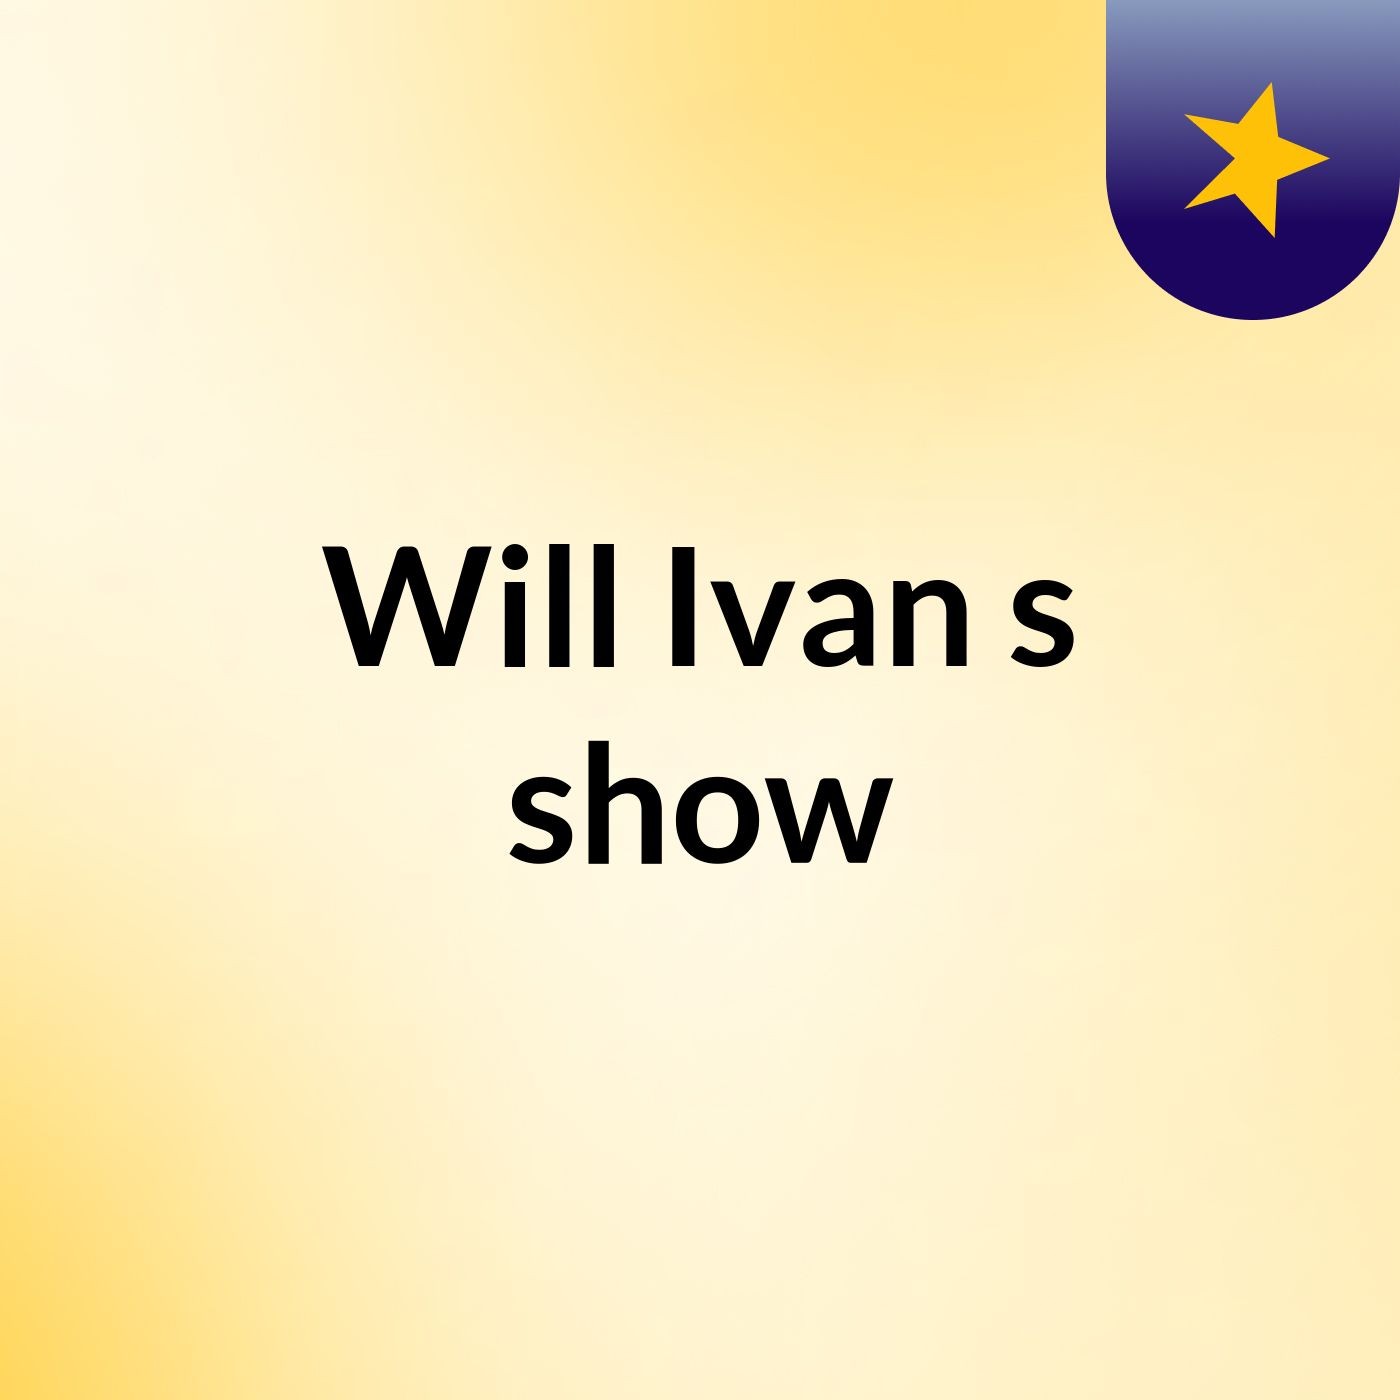 Will Ivan's show